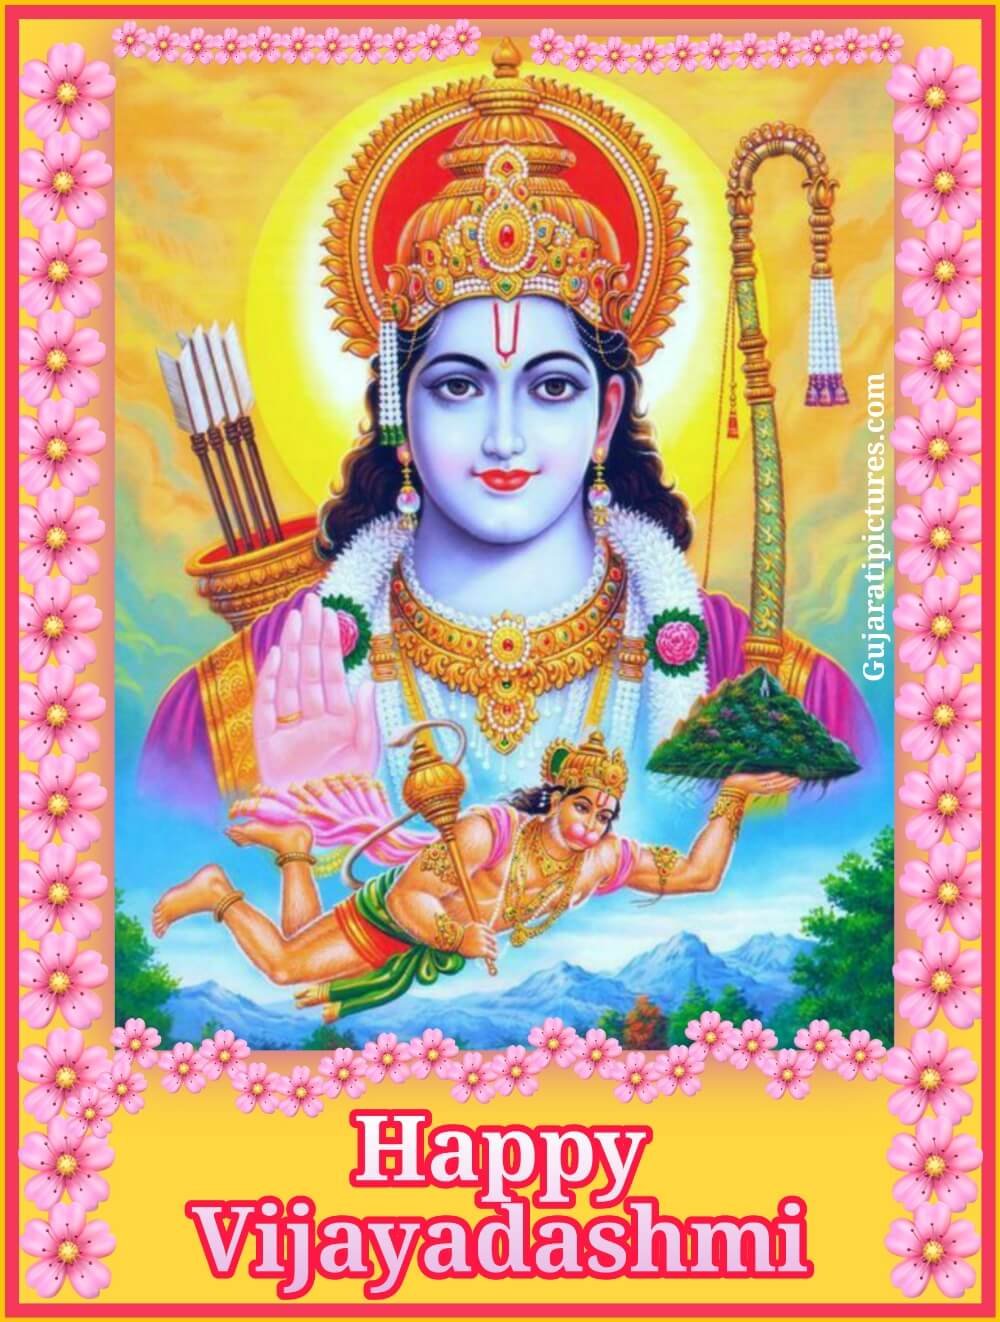 Happy Vijayadashmi Image